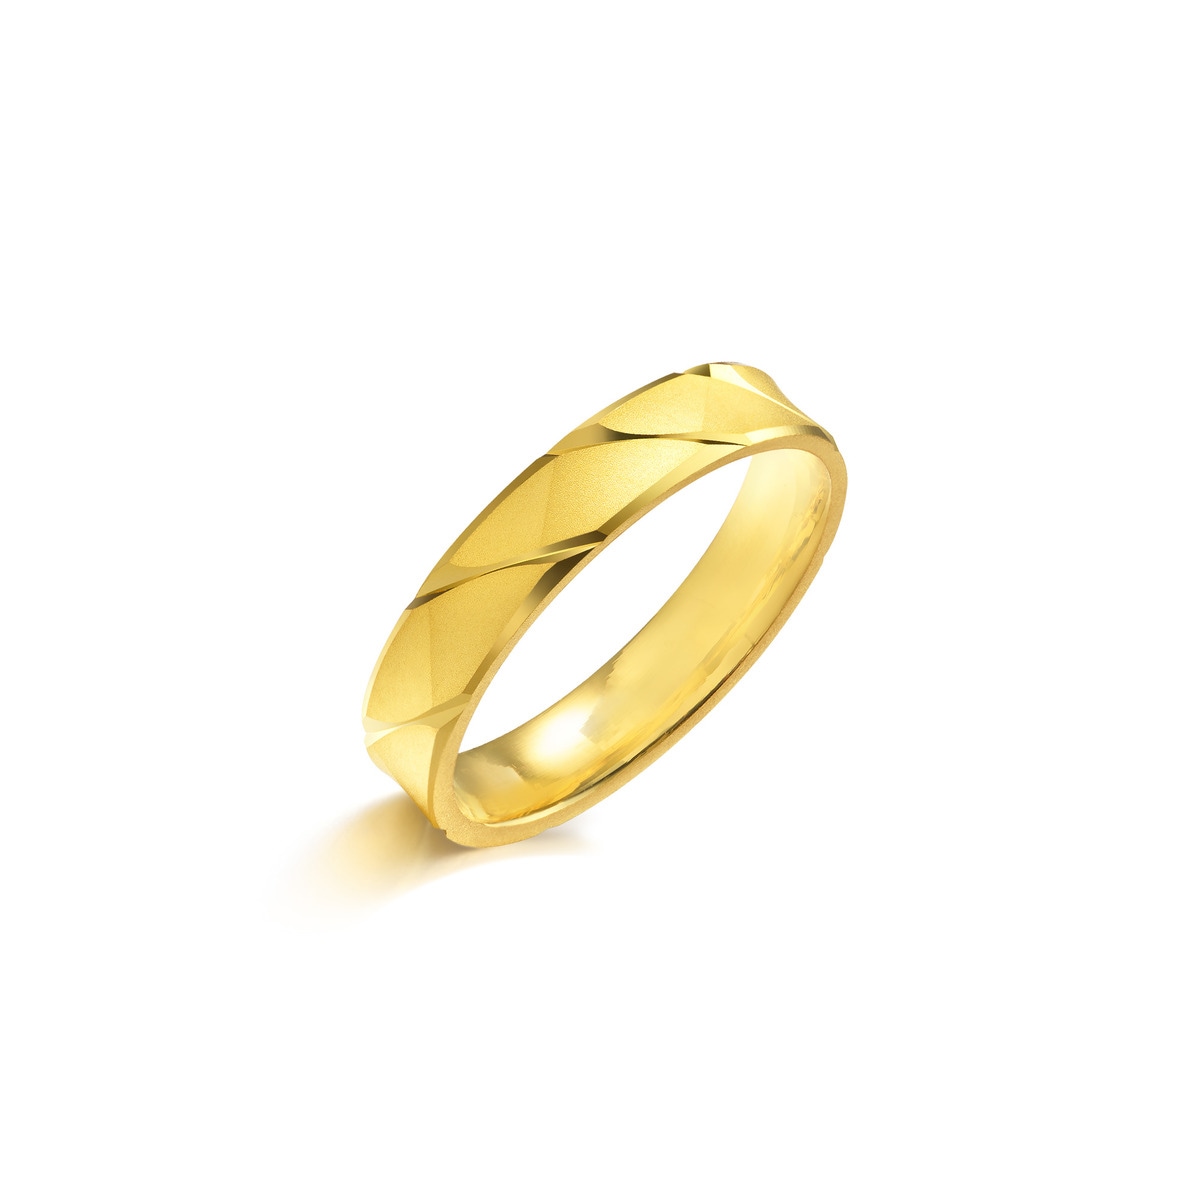 999.9 Gold Ring | Chow Sang Sang 